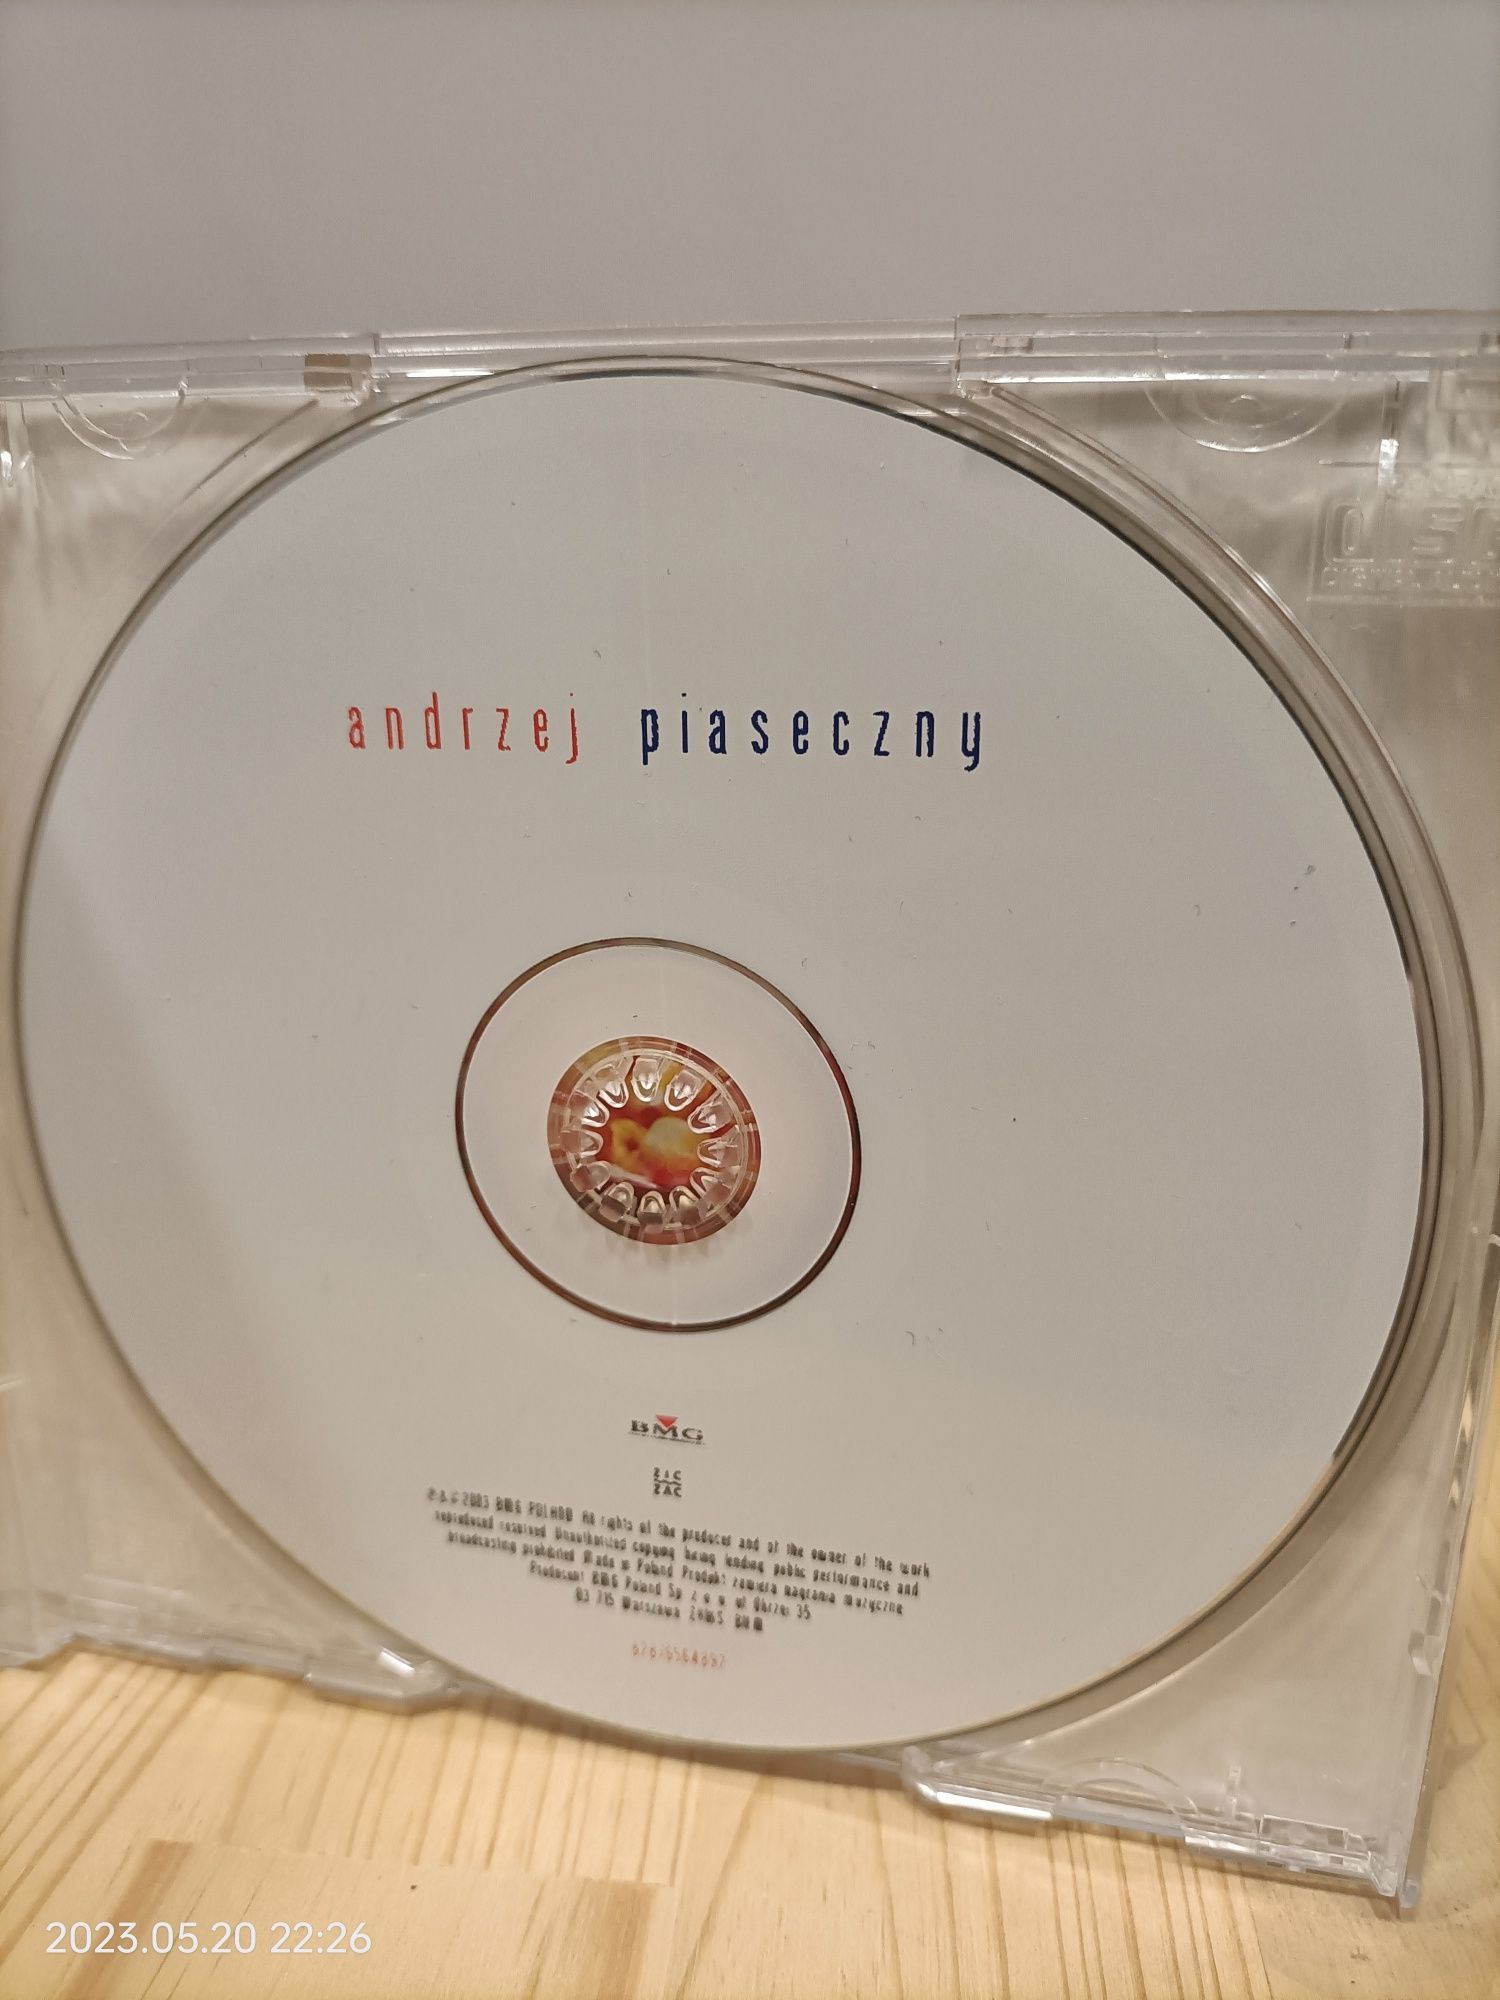 Andzej Piaseczny cd